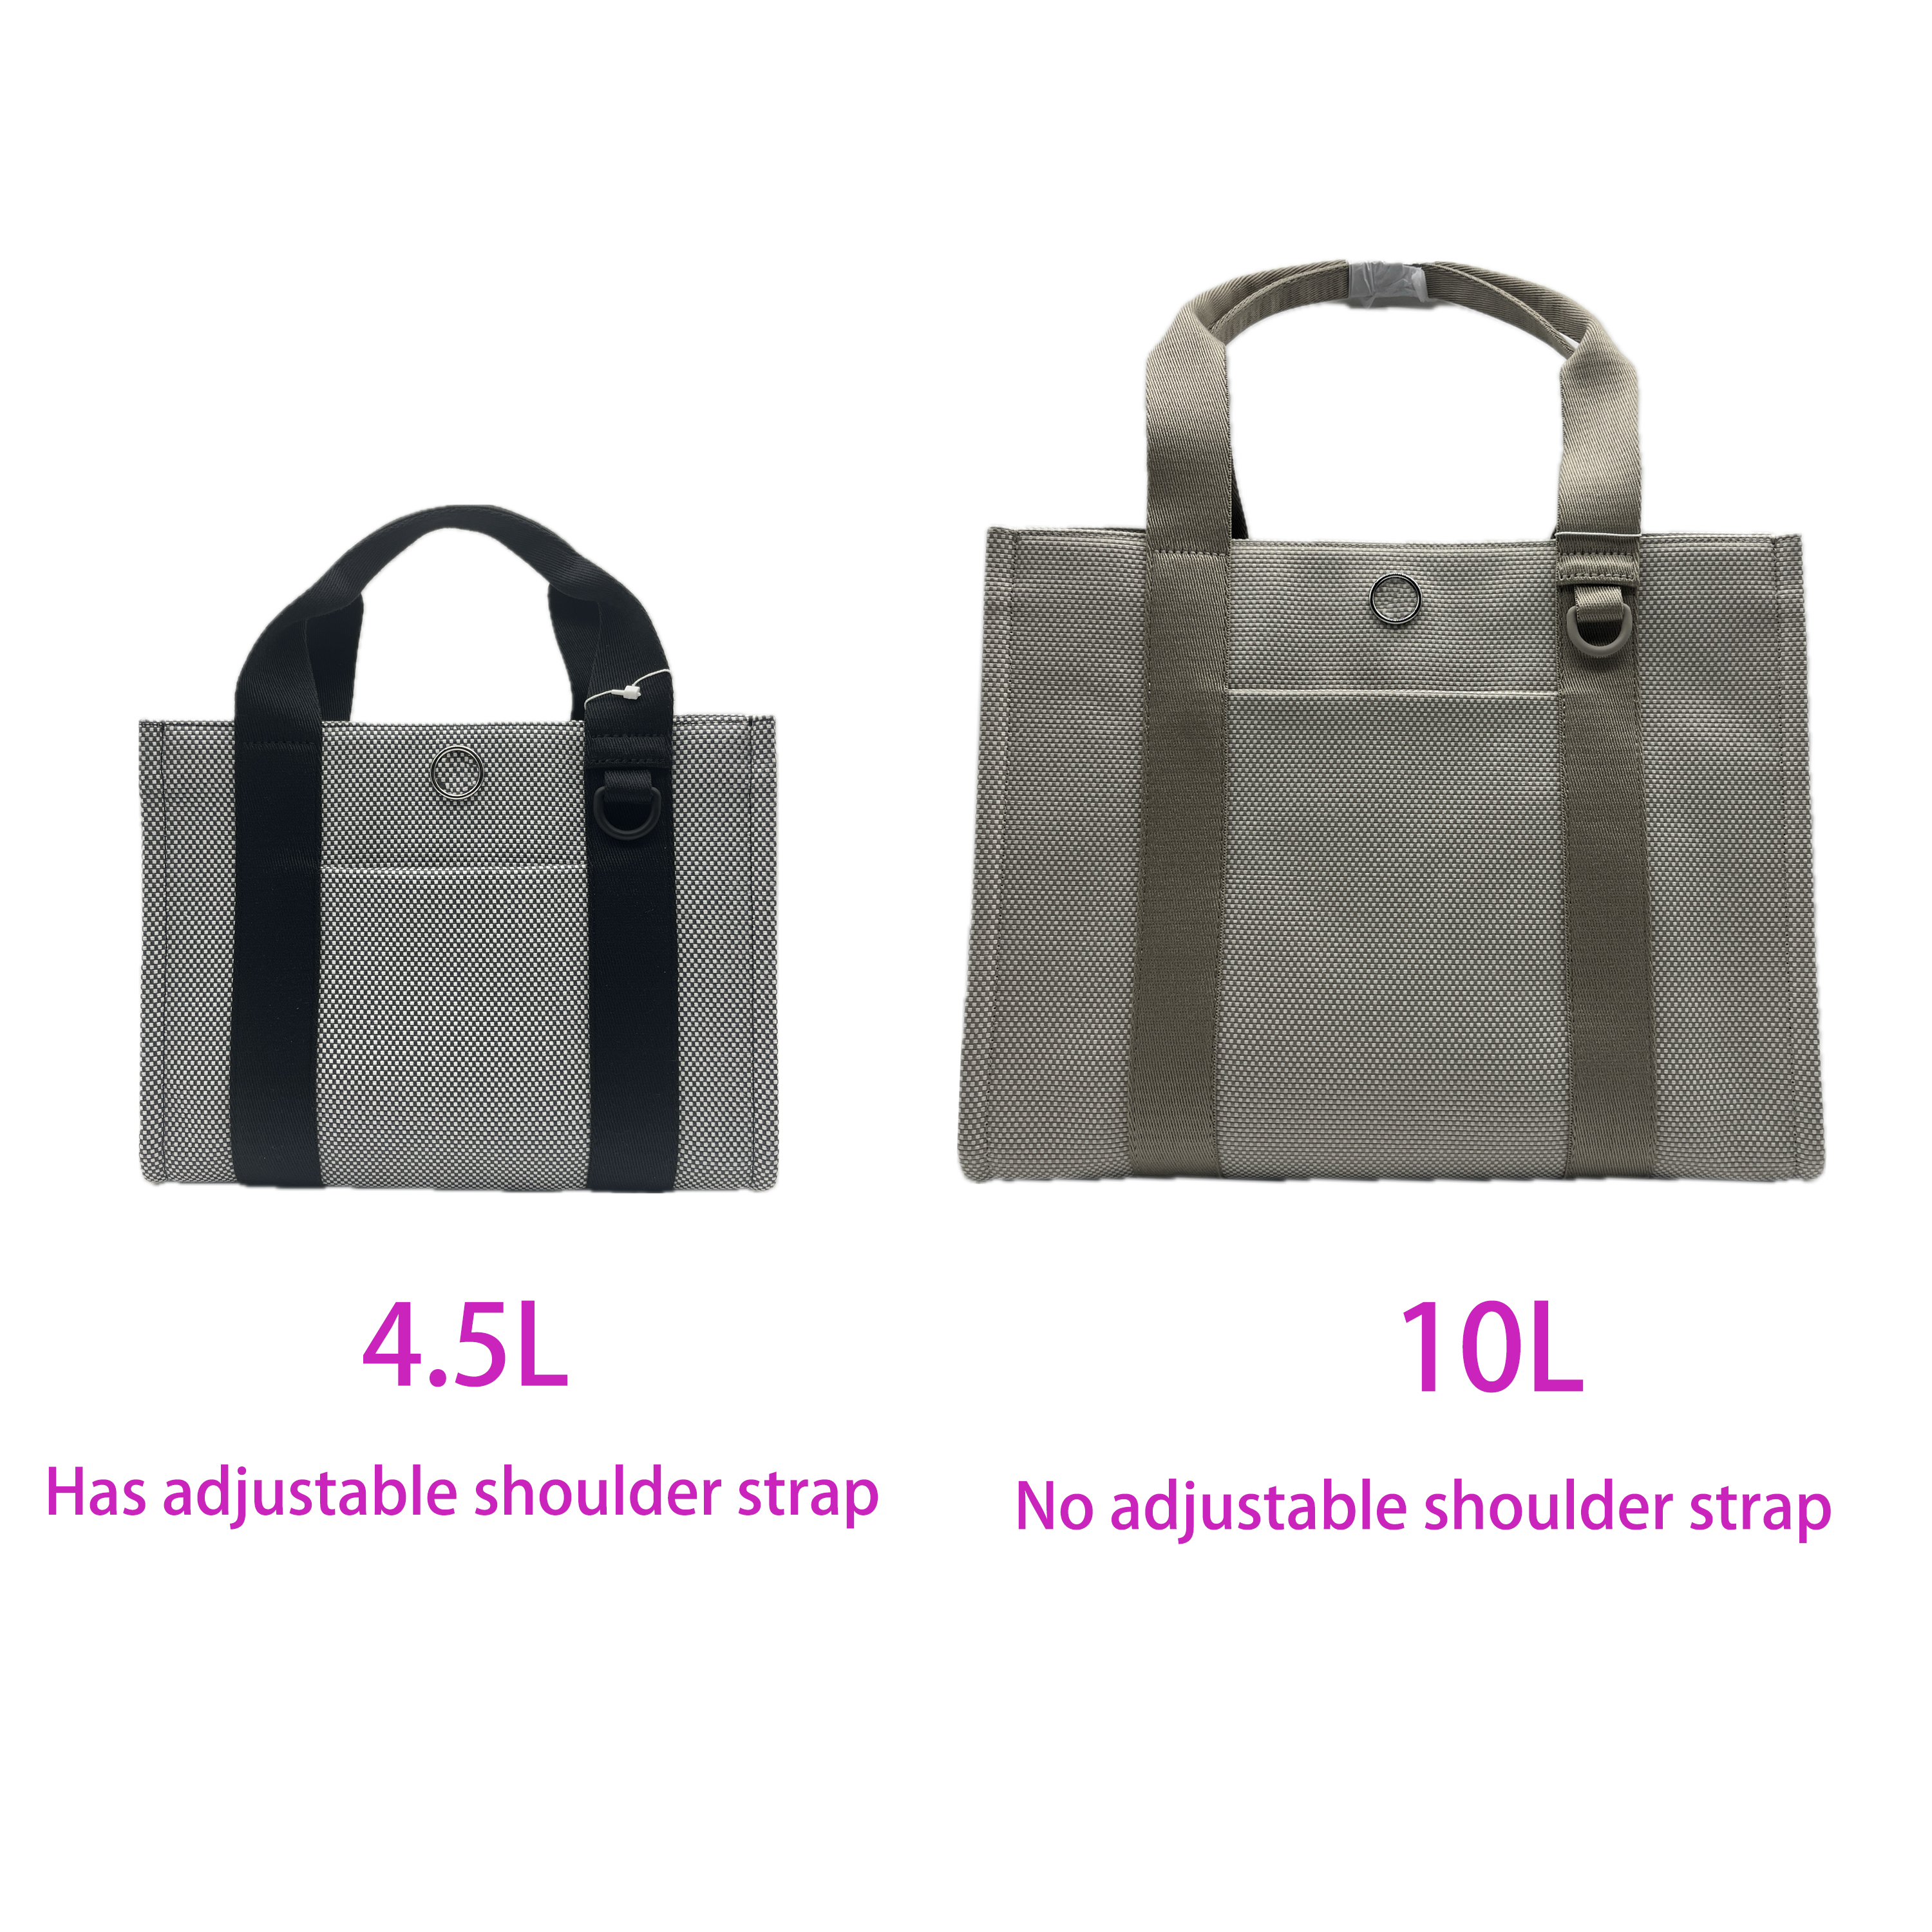 Lu iki ton tuval tote çanta kadınlar için daha büyük kapasiteli alışveriş çantası gezileri çanta 2 Boyutlar 10L ve Mini 4.5L QLTRADE_9 İNGINE TESLİM DÖNGÜSÜNDE PRE-SALE yaklaşık 30 Gün